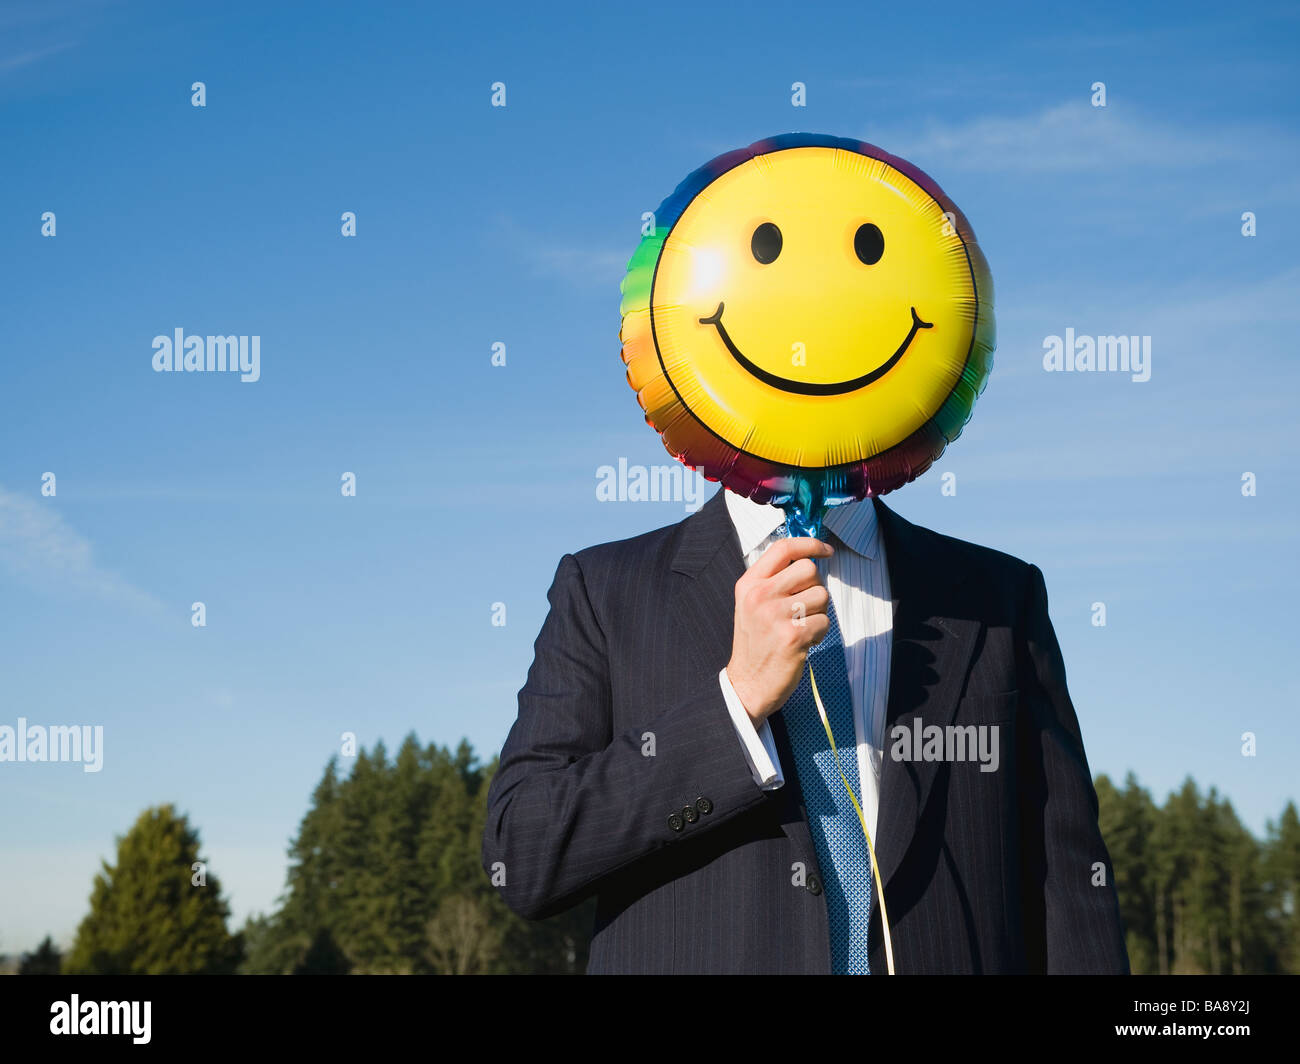 Businessman holding smiley face balloon over face Stock Photo